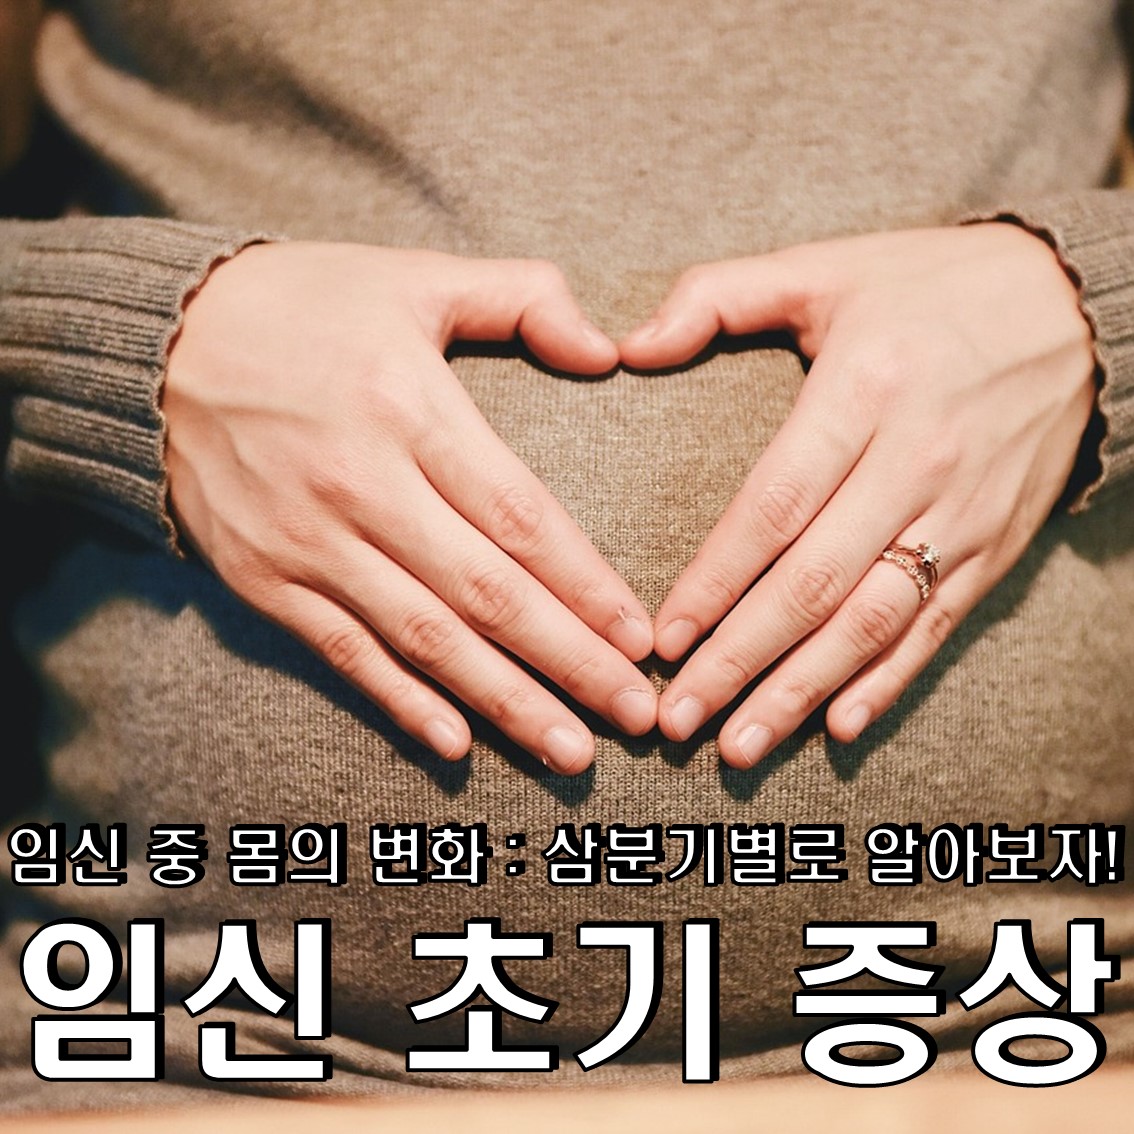 임신 초기 증상 & 임신 극초기 증상 & 임신 중 몸의 변화 : 삼분기별로 알아보자!